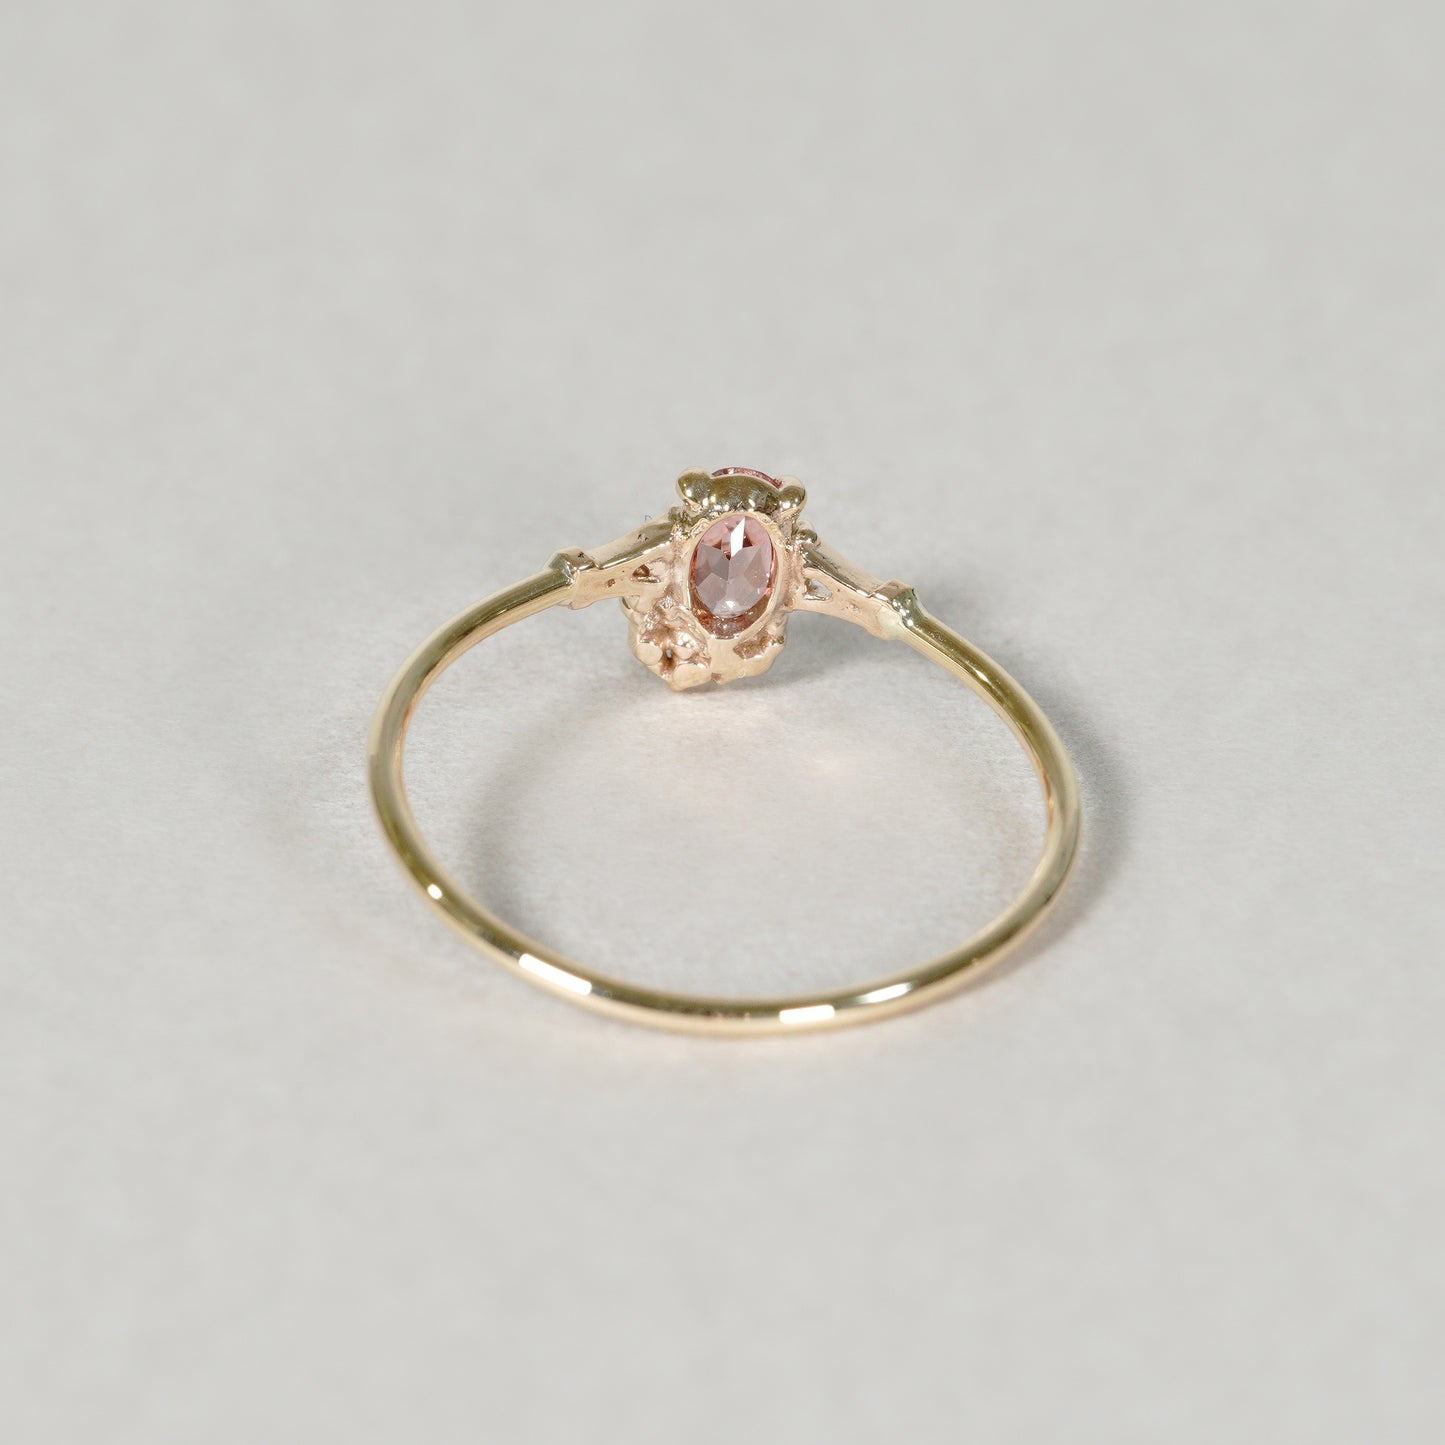 1376 Malaya Garnet Ring